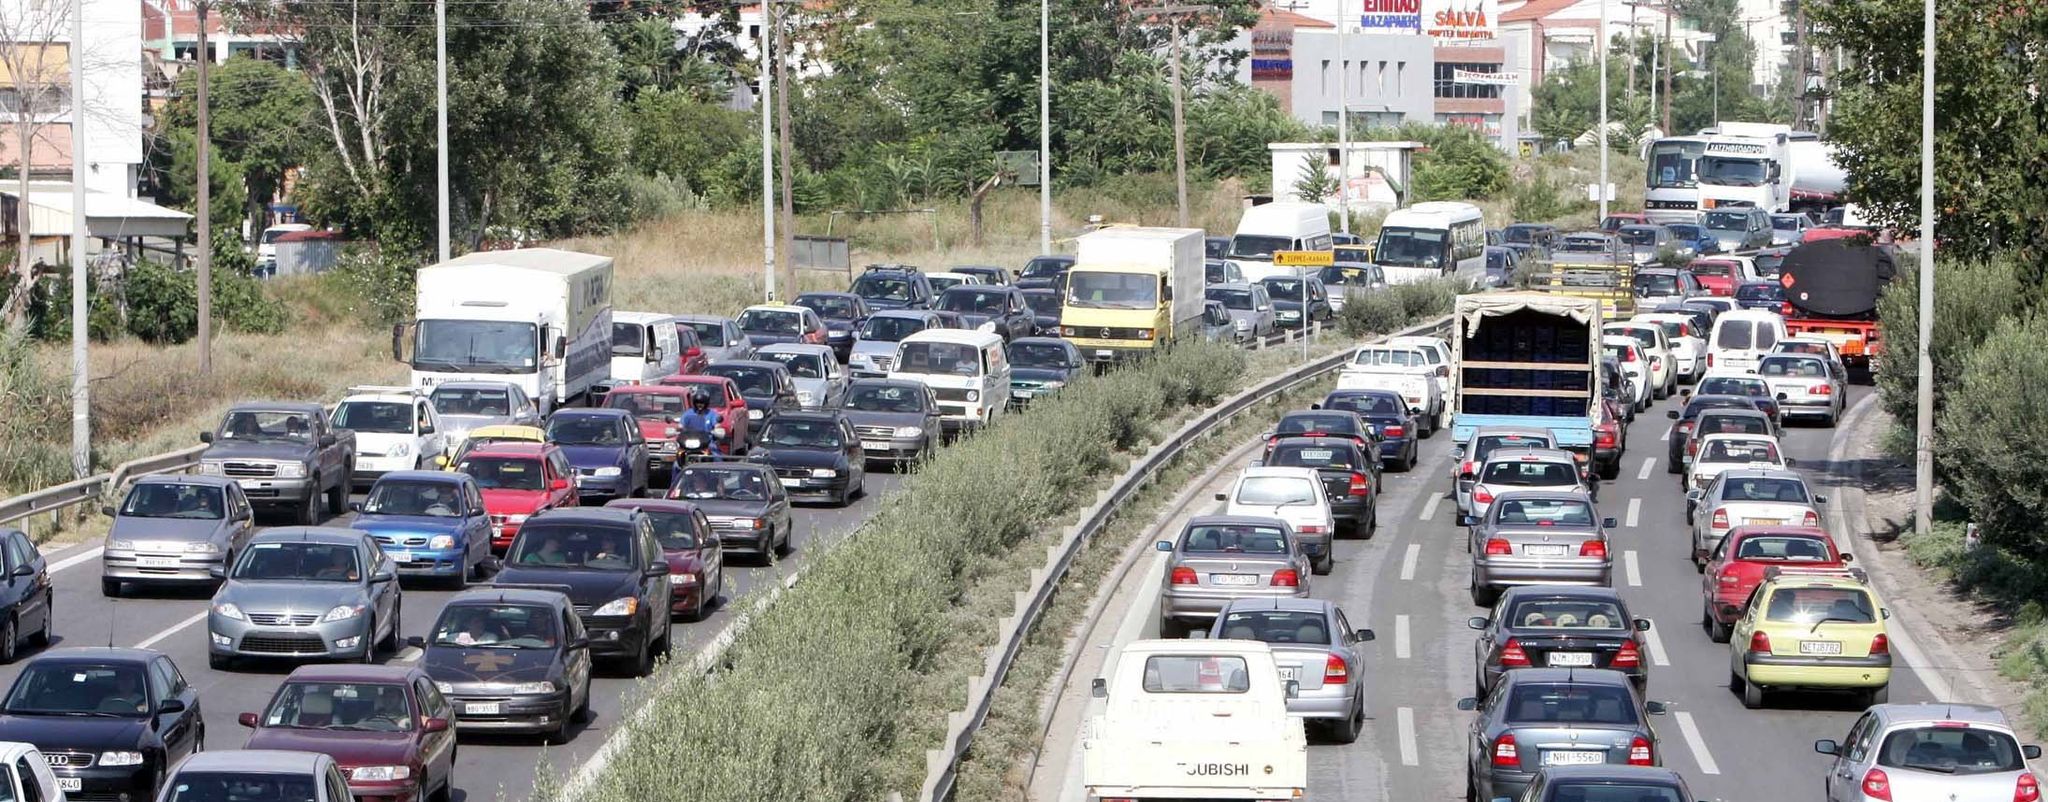 Θεσσαλονίκη: Νέο τροχαίο στην Περιφερειακή οδό- Τραυματισμός ενός ατόμου